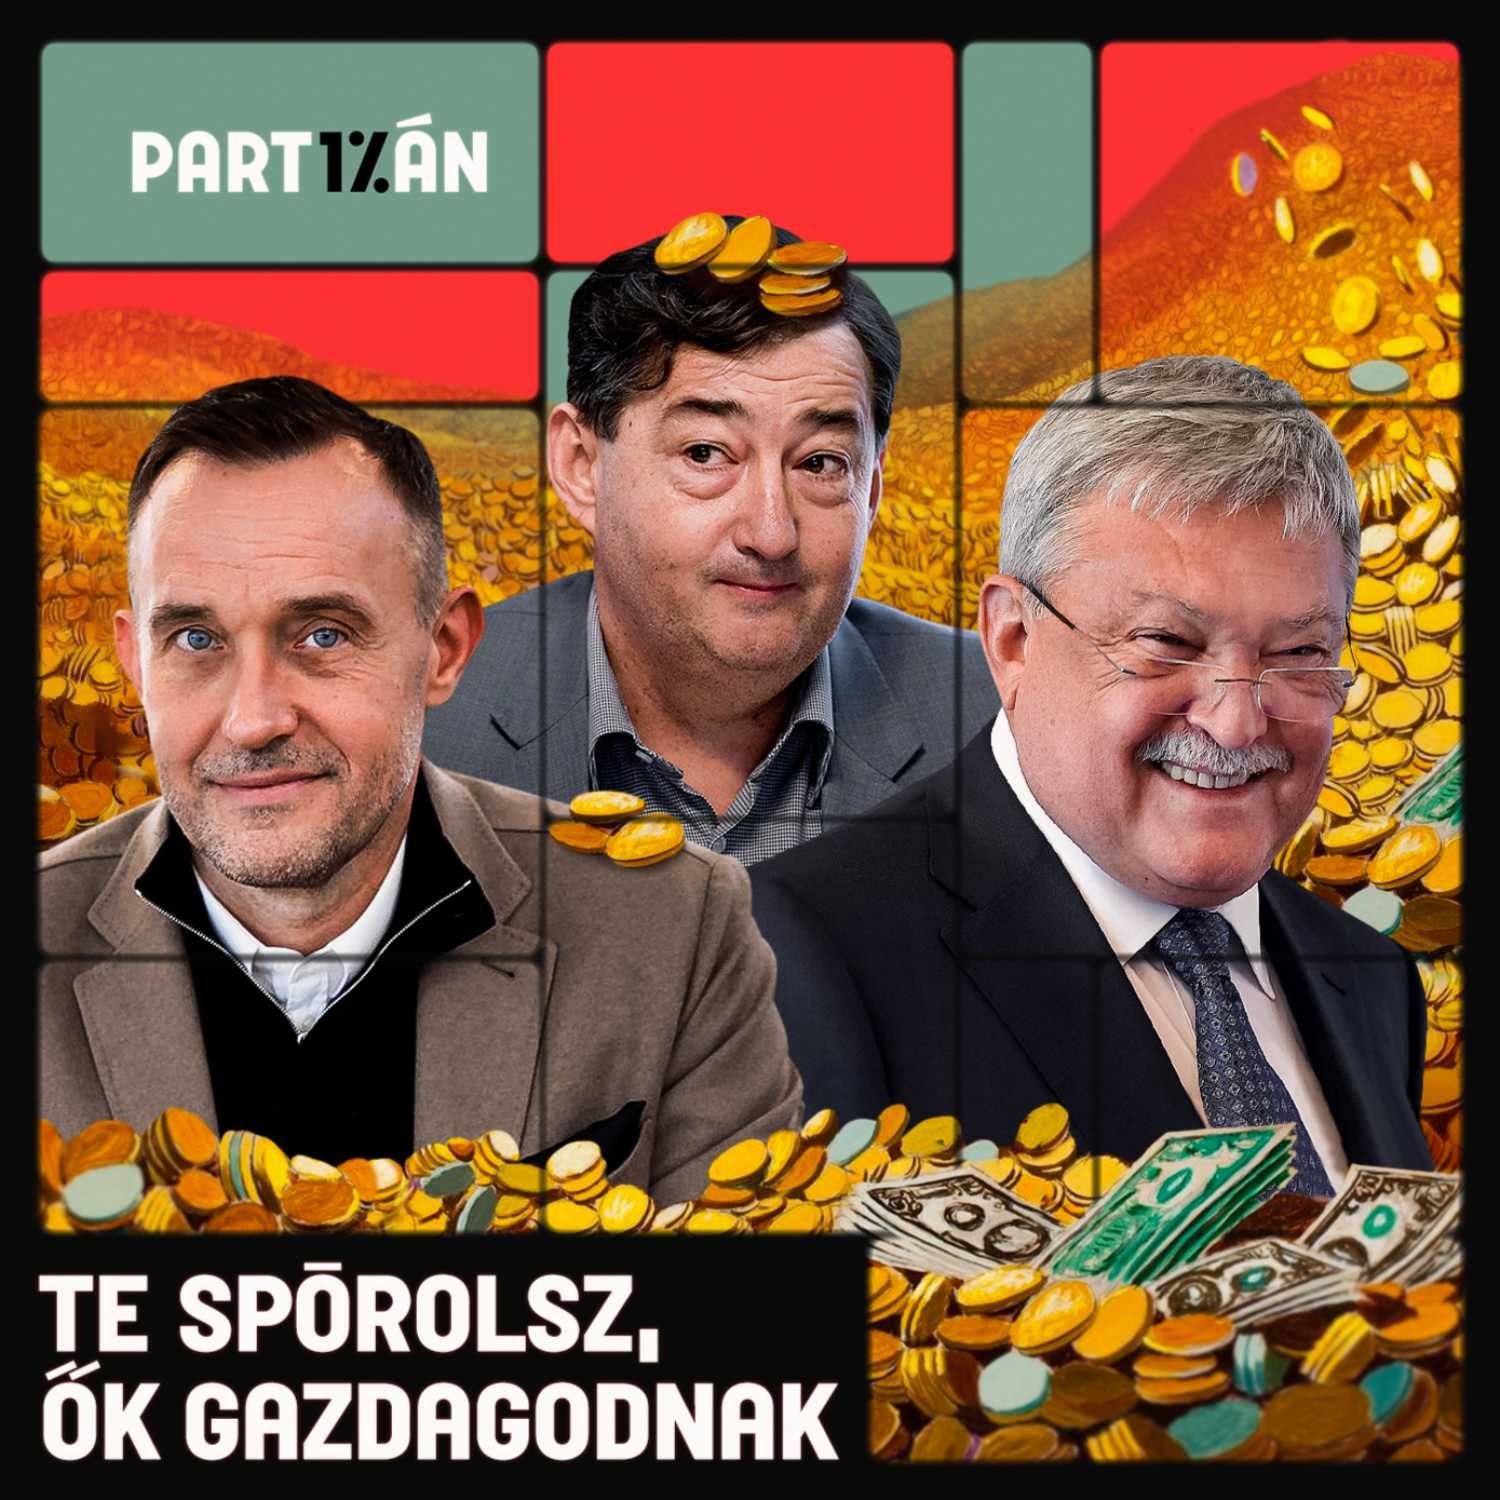 Ezért a gazdagok az Orbán-rendszer igazi nyertesei | Kérdések nélkül nincs változás #7